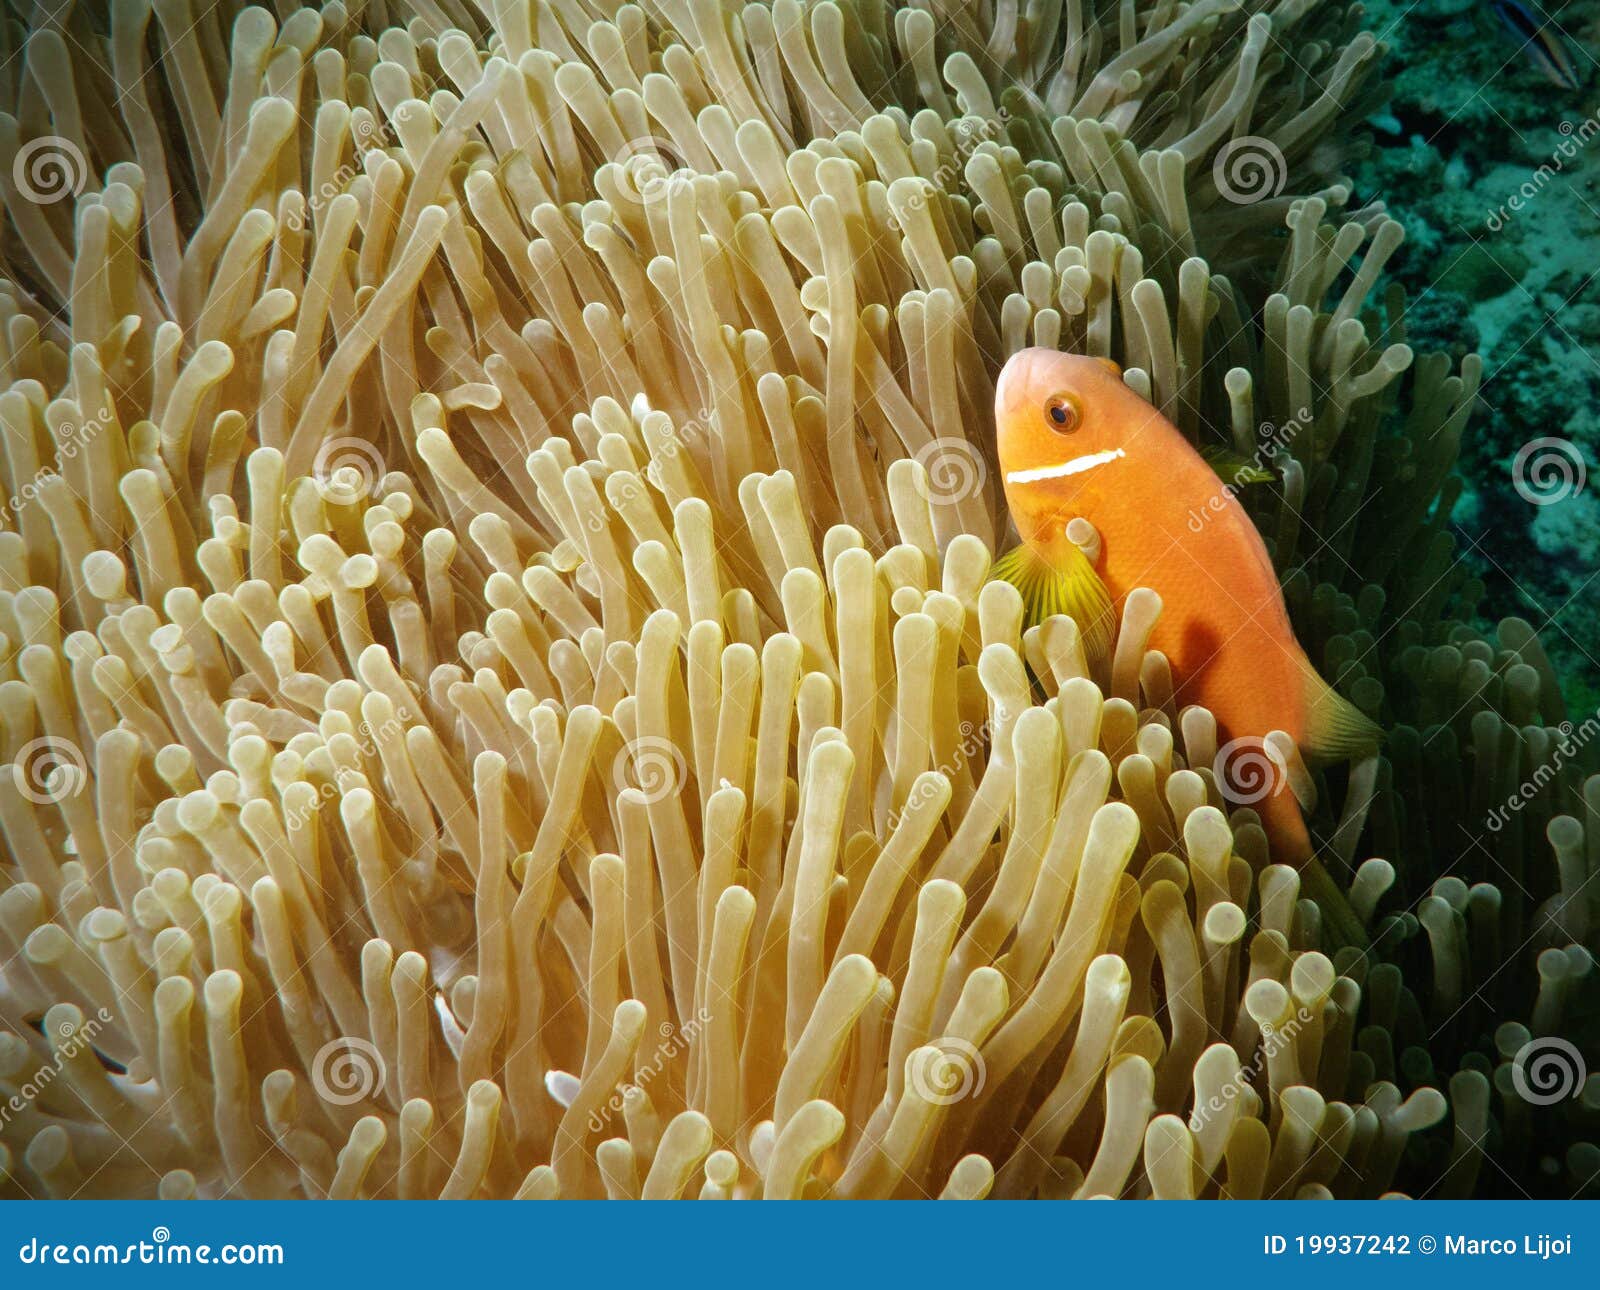 orange clownfish hidden in anemone